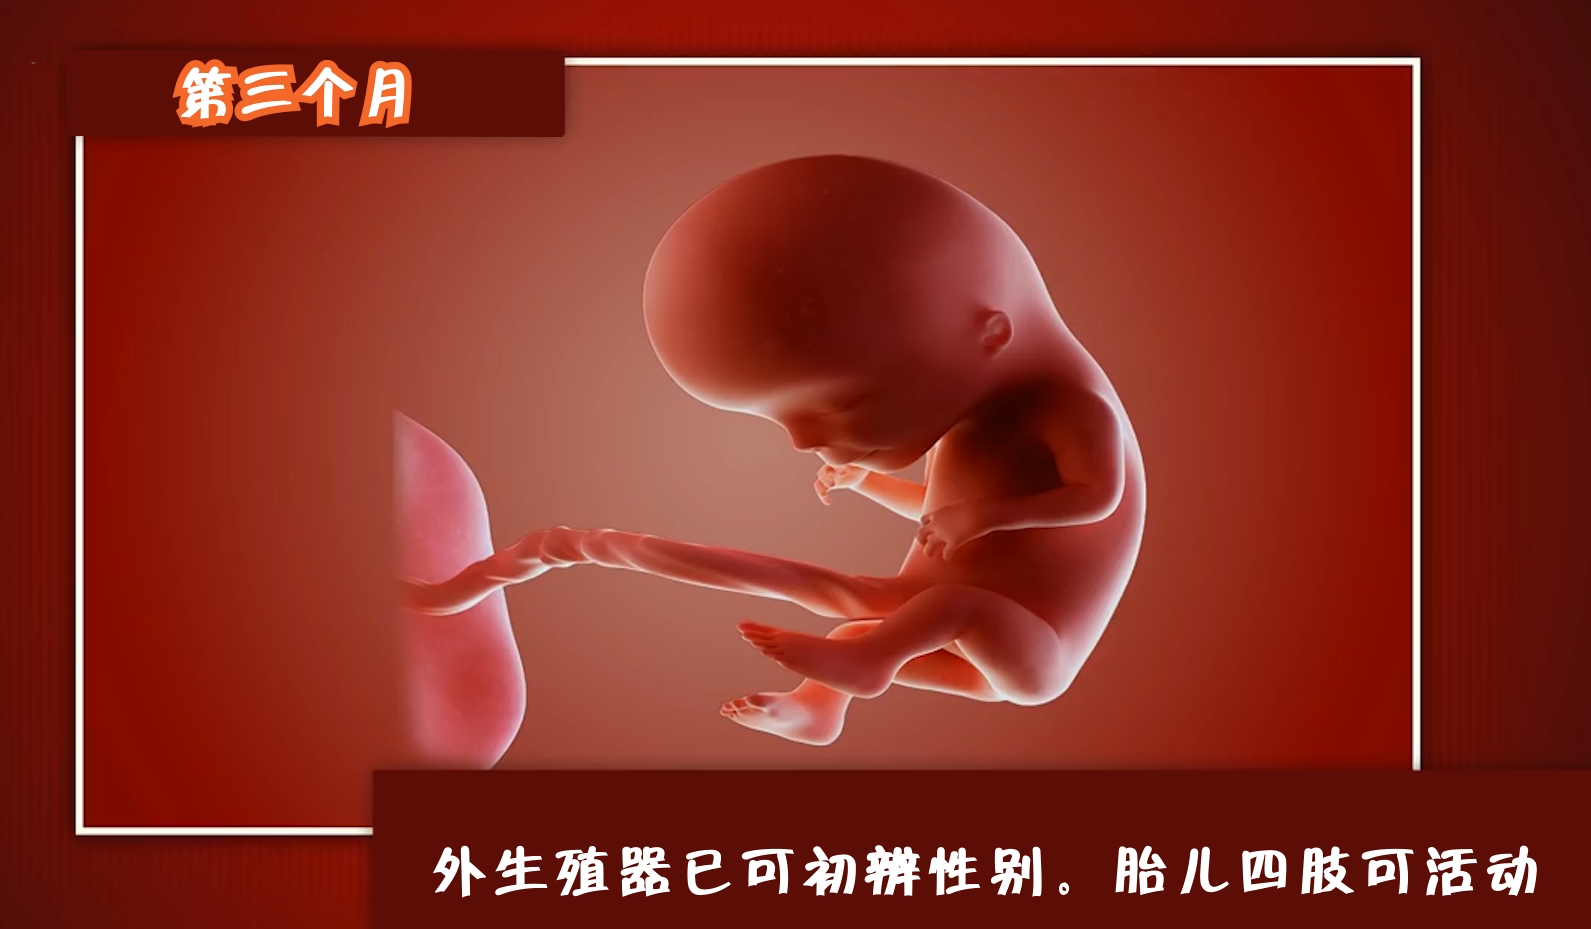 怀孕多久可以知道胎儿性别,孕妈们来看看胎儿的生长过程!